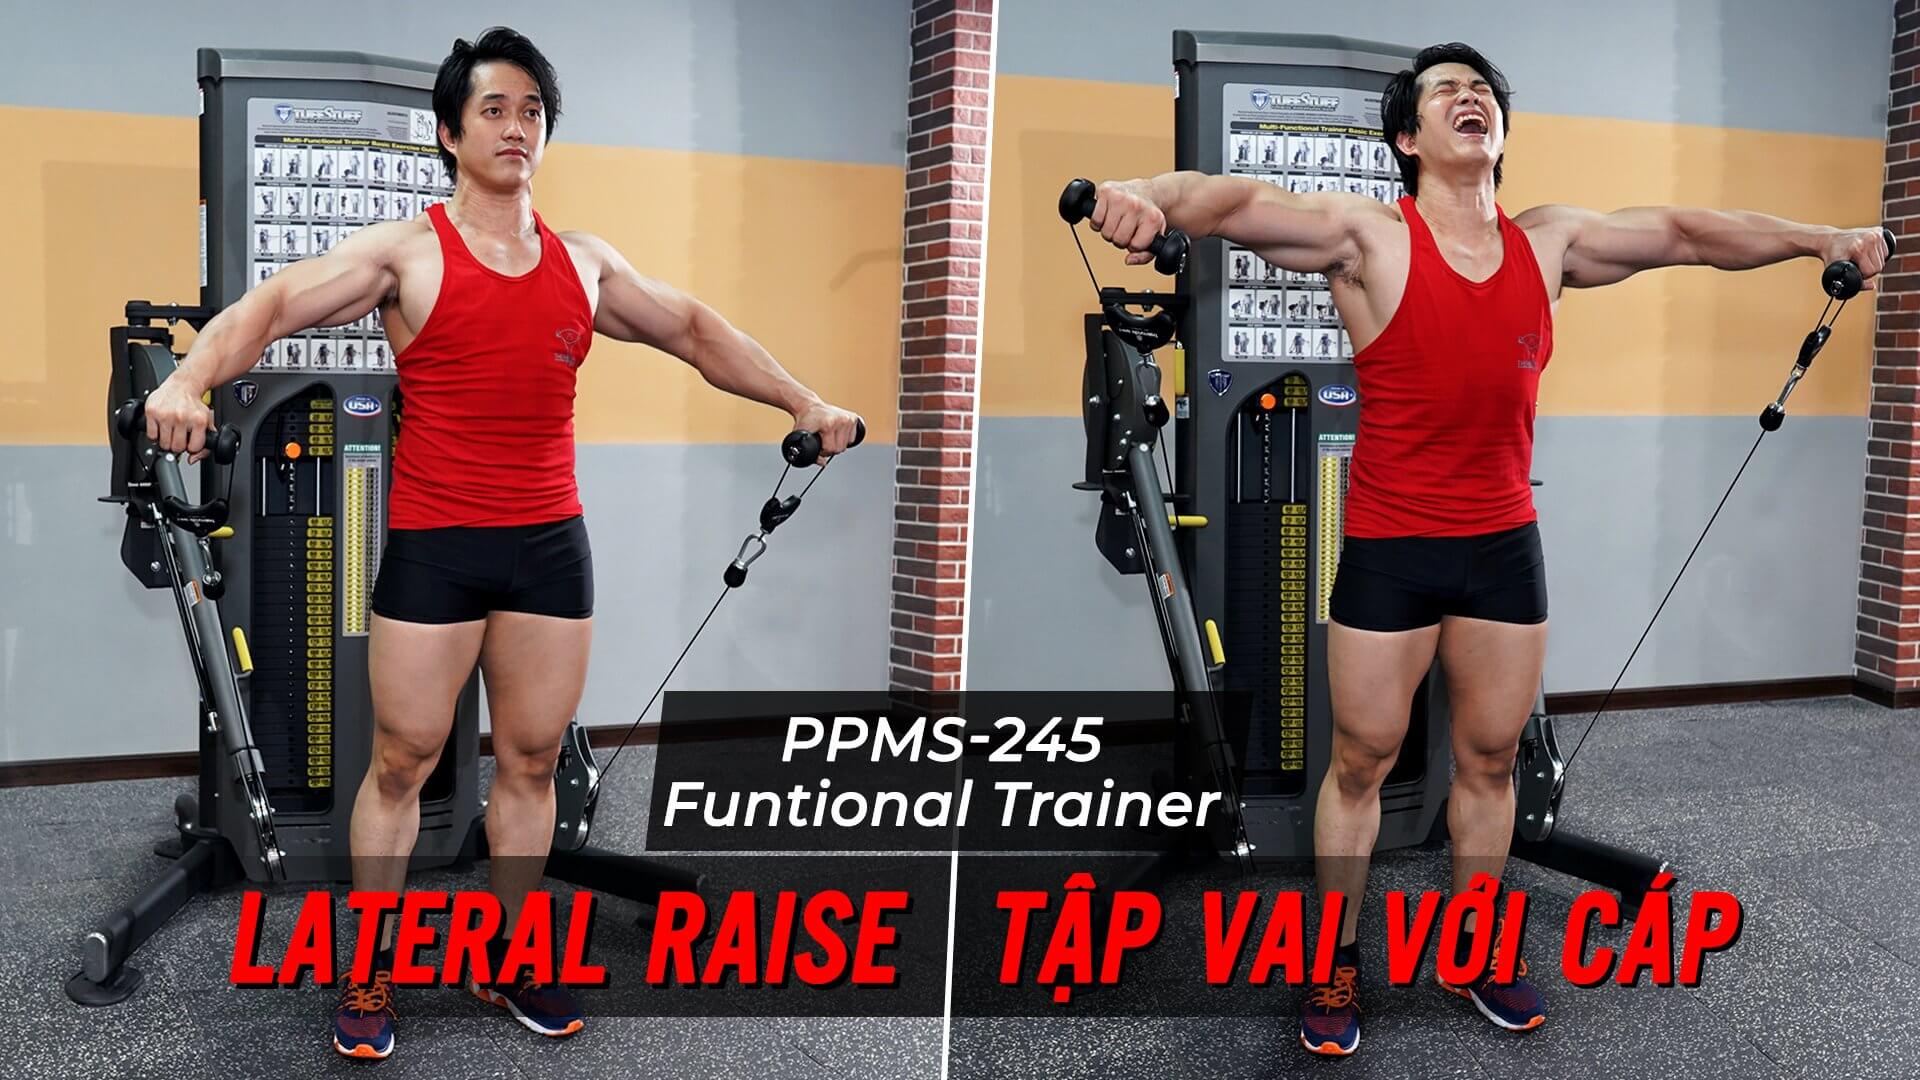 Lateral Raise - Hướng dẫn tập vai trên máy Functional Trainer (PPMS-245)